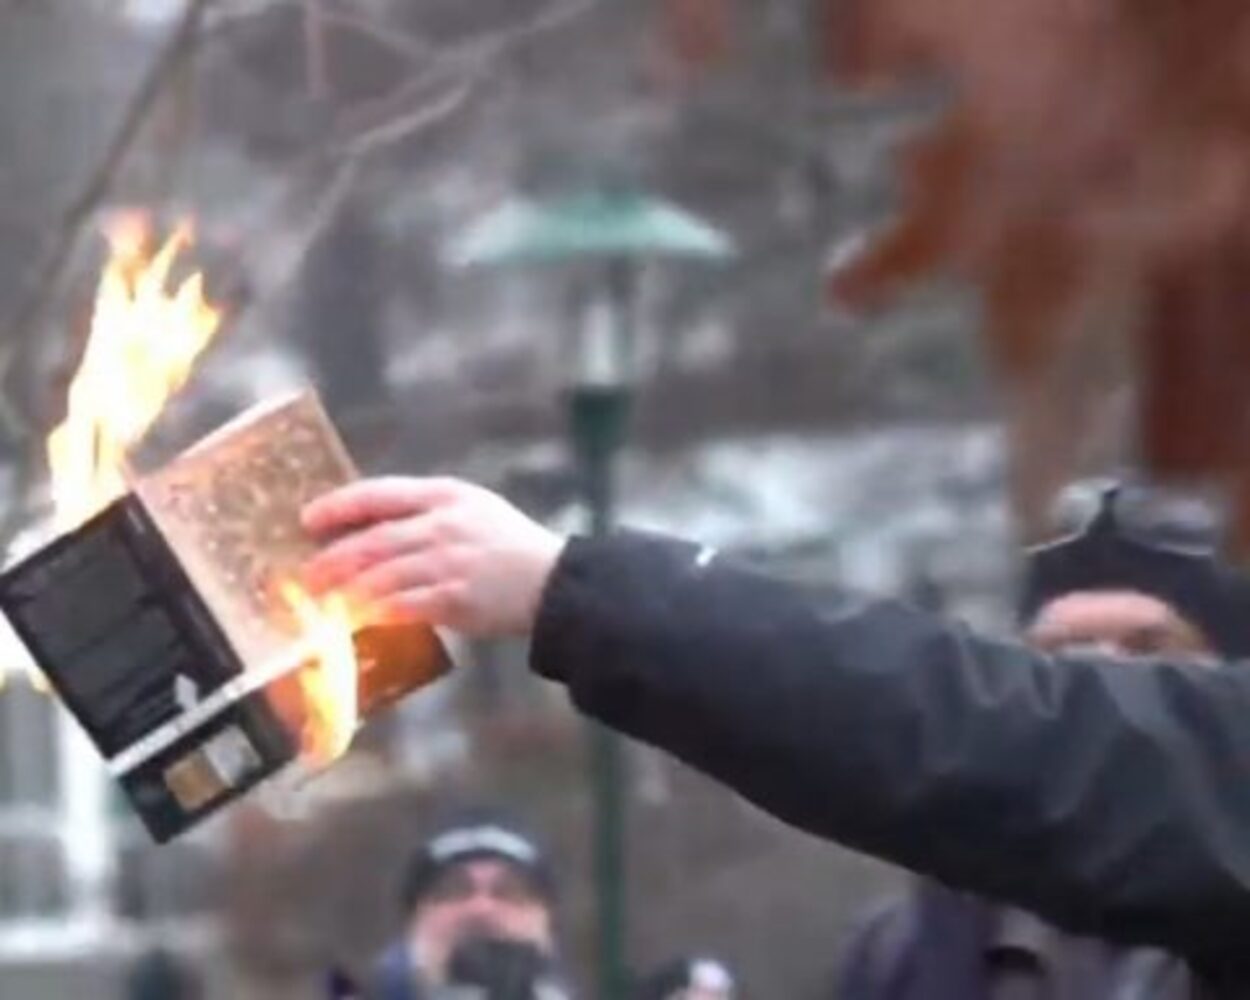 S-a aflat cine a orchestrat arderea Coranului în faţa ambasadei Turciei la Stockholm